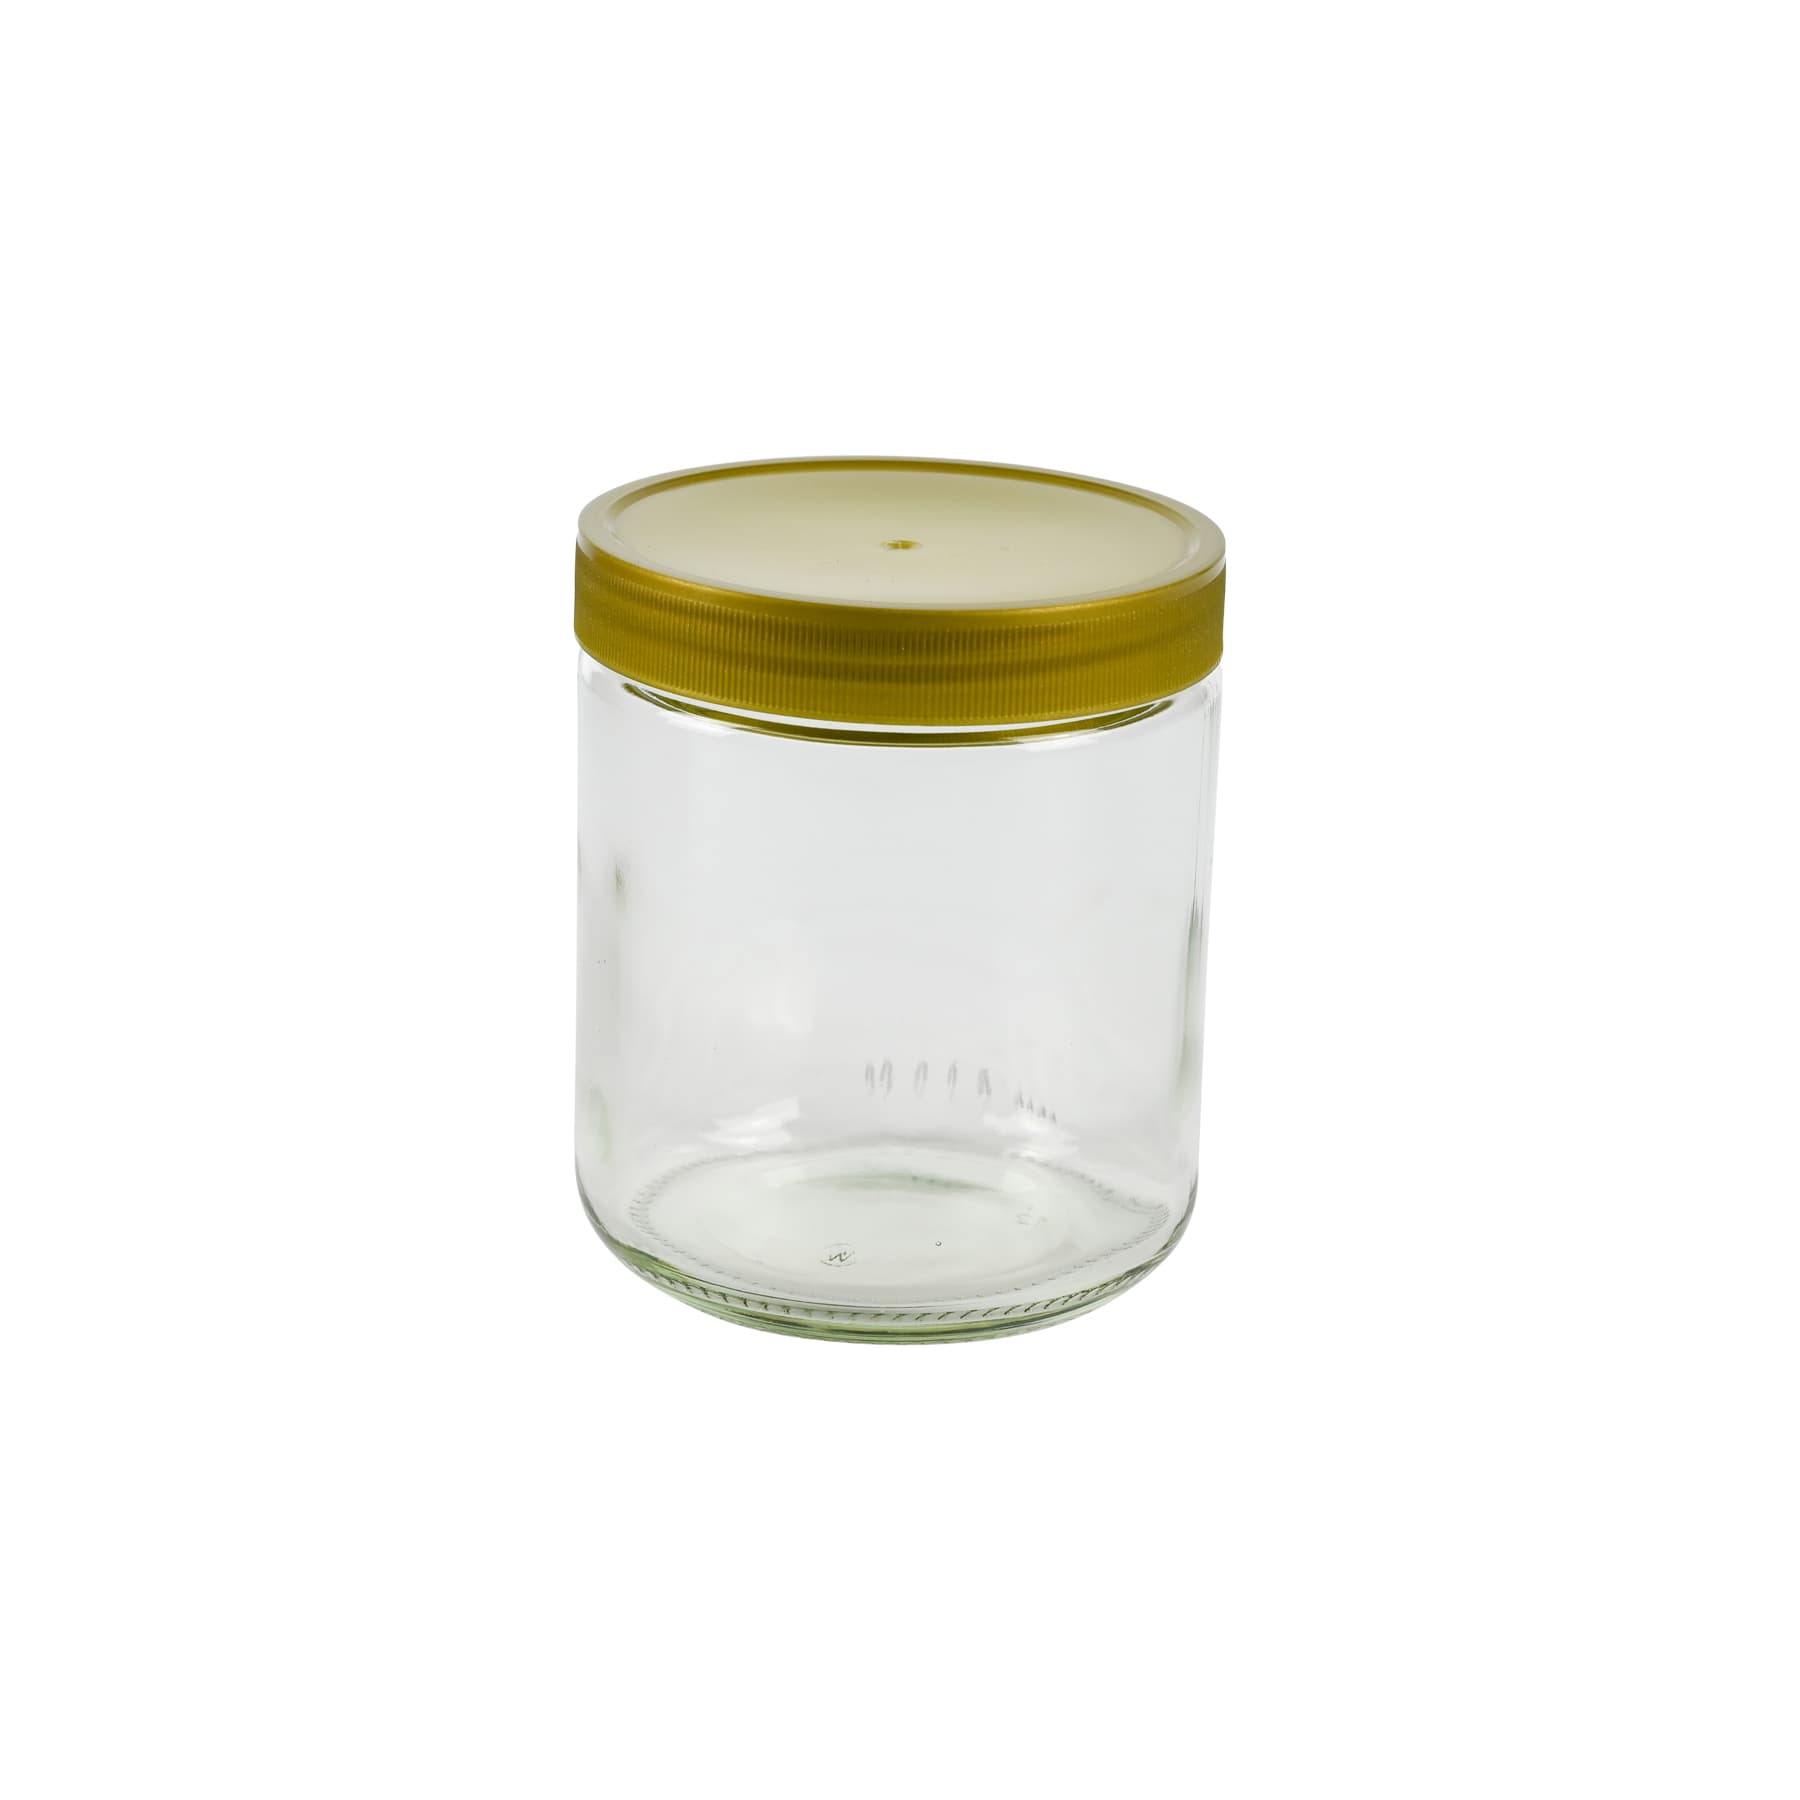 Rundglas 500 g mit 80 mm Kunststoff-Schraub-Deckel im Karton, 1/2 Palette: 1200 Stück, bundesweit frei Haus